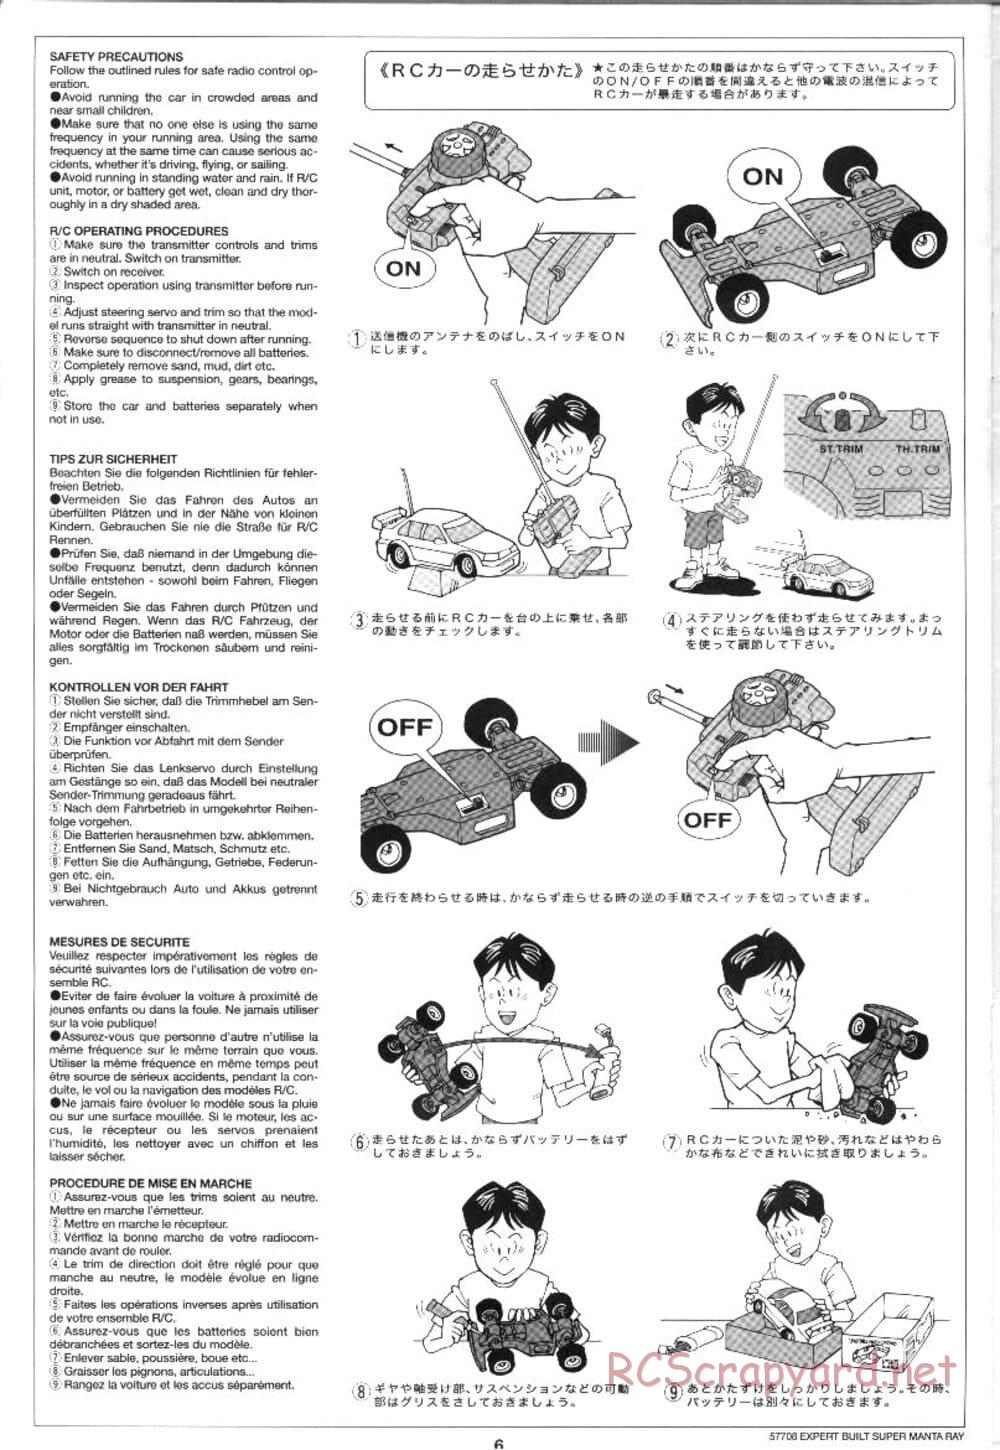 Tamiya - XB Super Manta Ray - DF-01 Chassis - Manual - Page 6